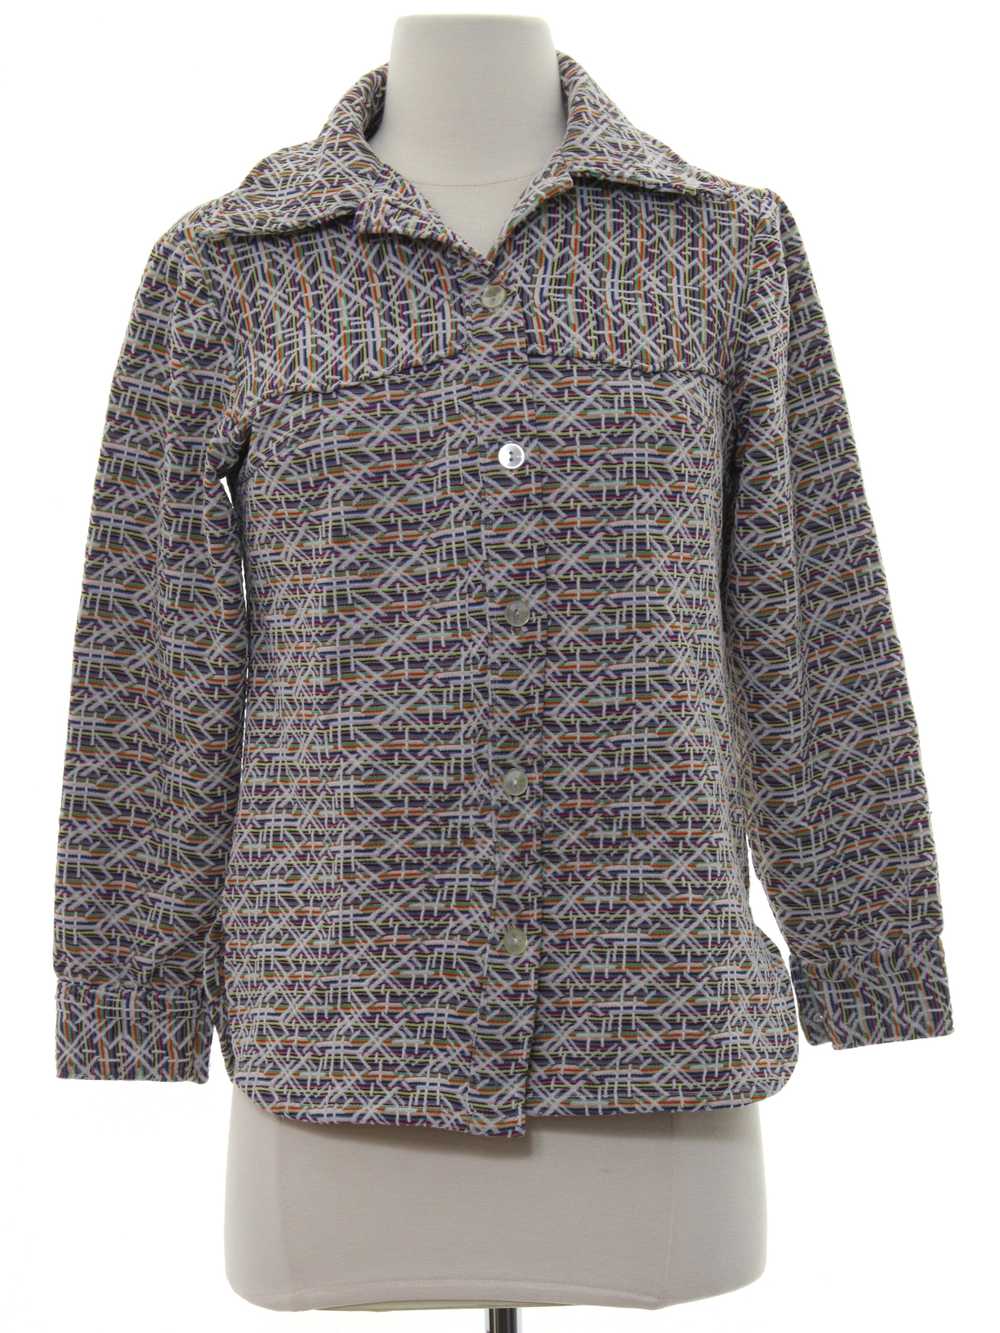 1970's Womens Knit Leisure Shirt-Jac Style Shirt - image 1